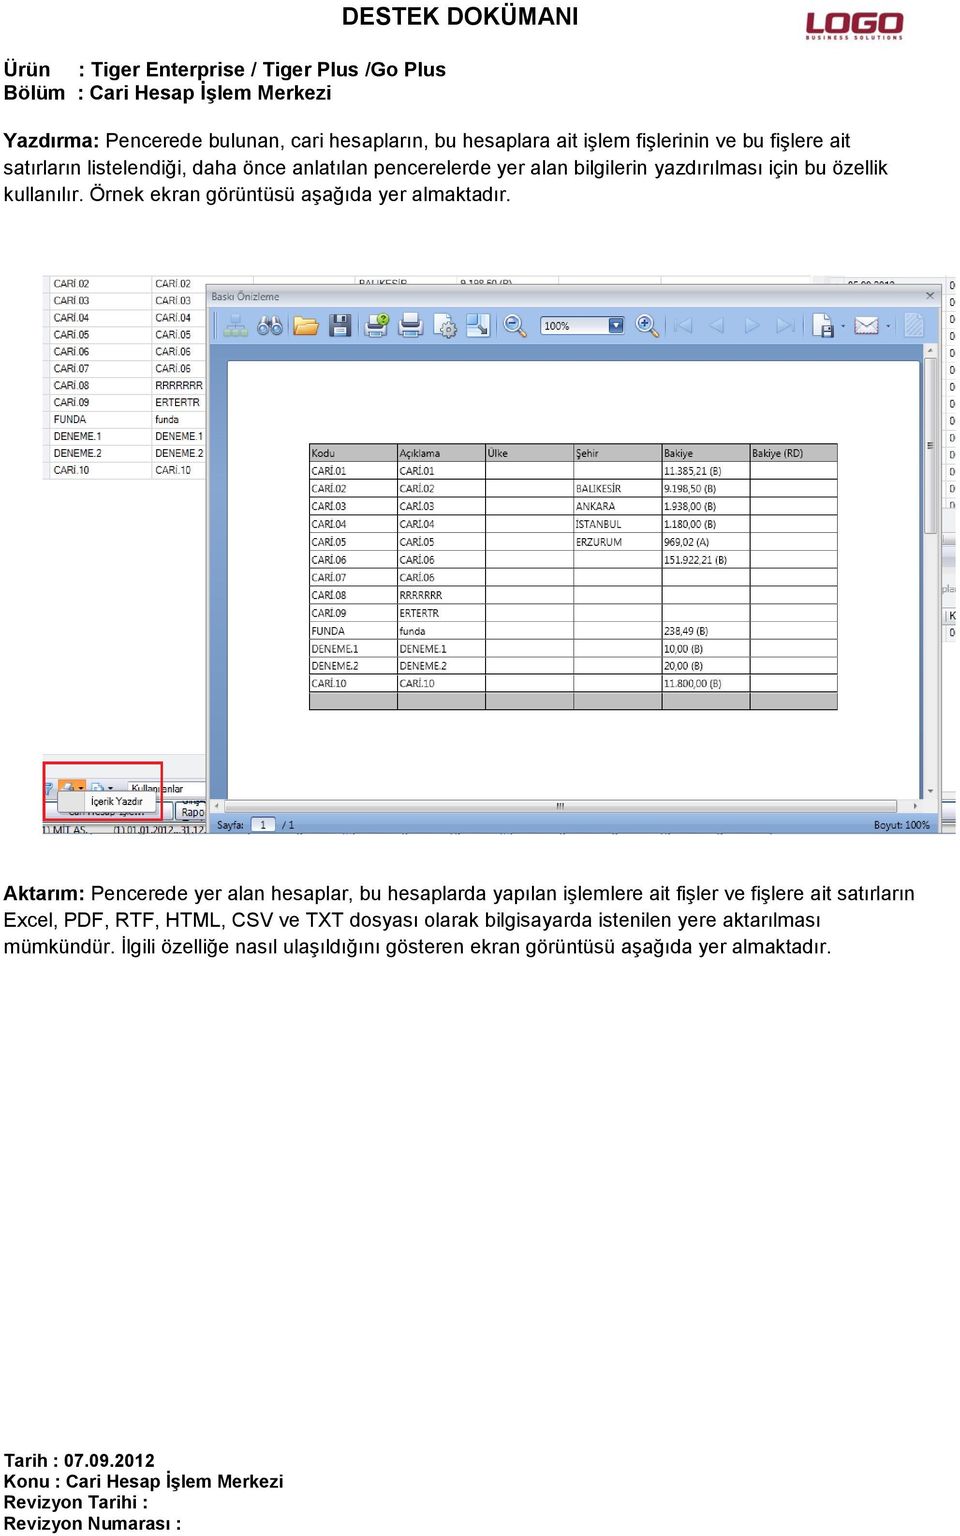 Aktarım: Pencerede yer alan hesaplar, bu hesaplarda yapılan işlemlere ait fişler ve fişlere ait satırların Excel, PDF, RTF, HTML, CSV ve